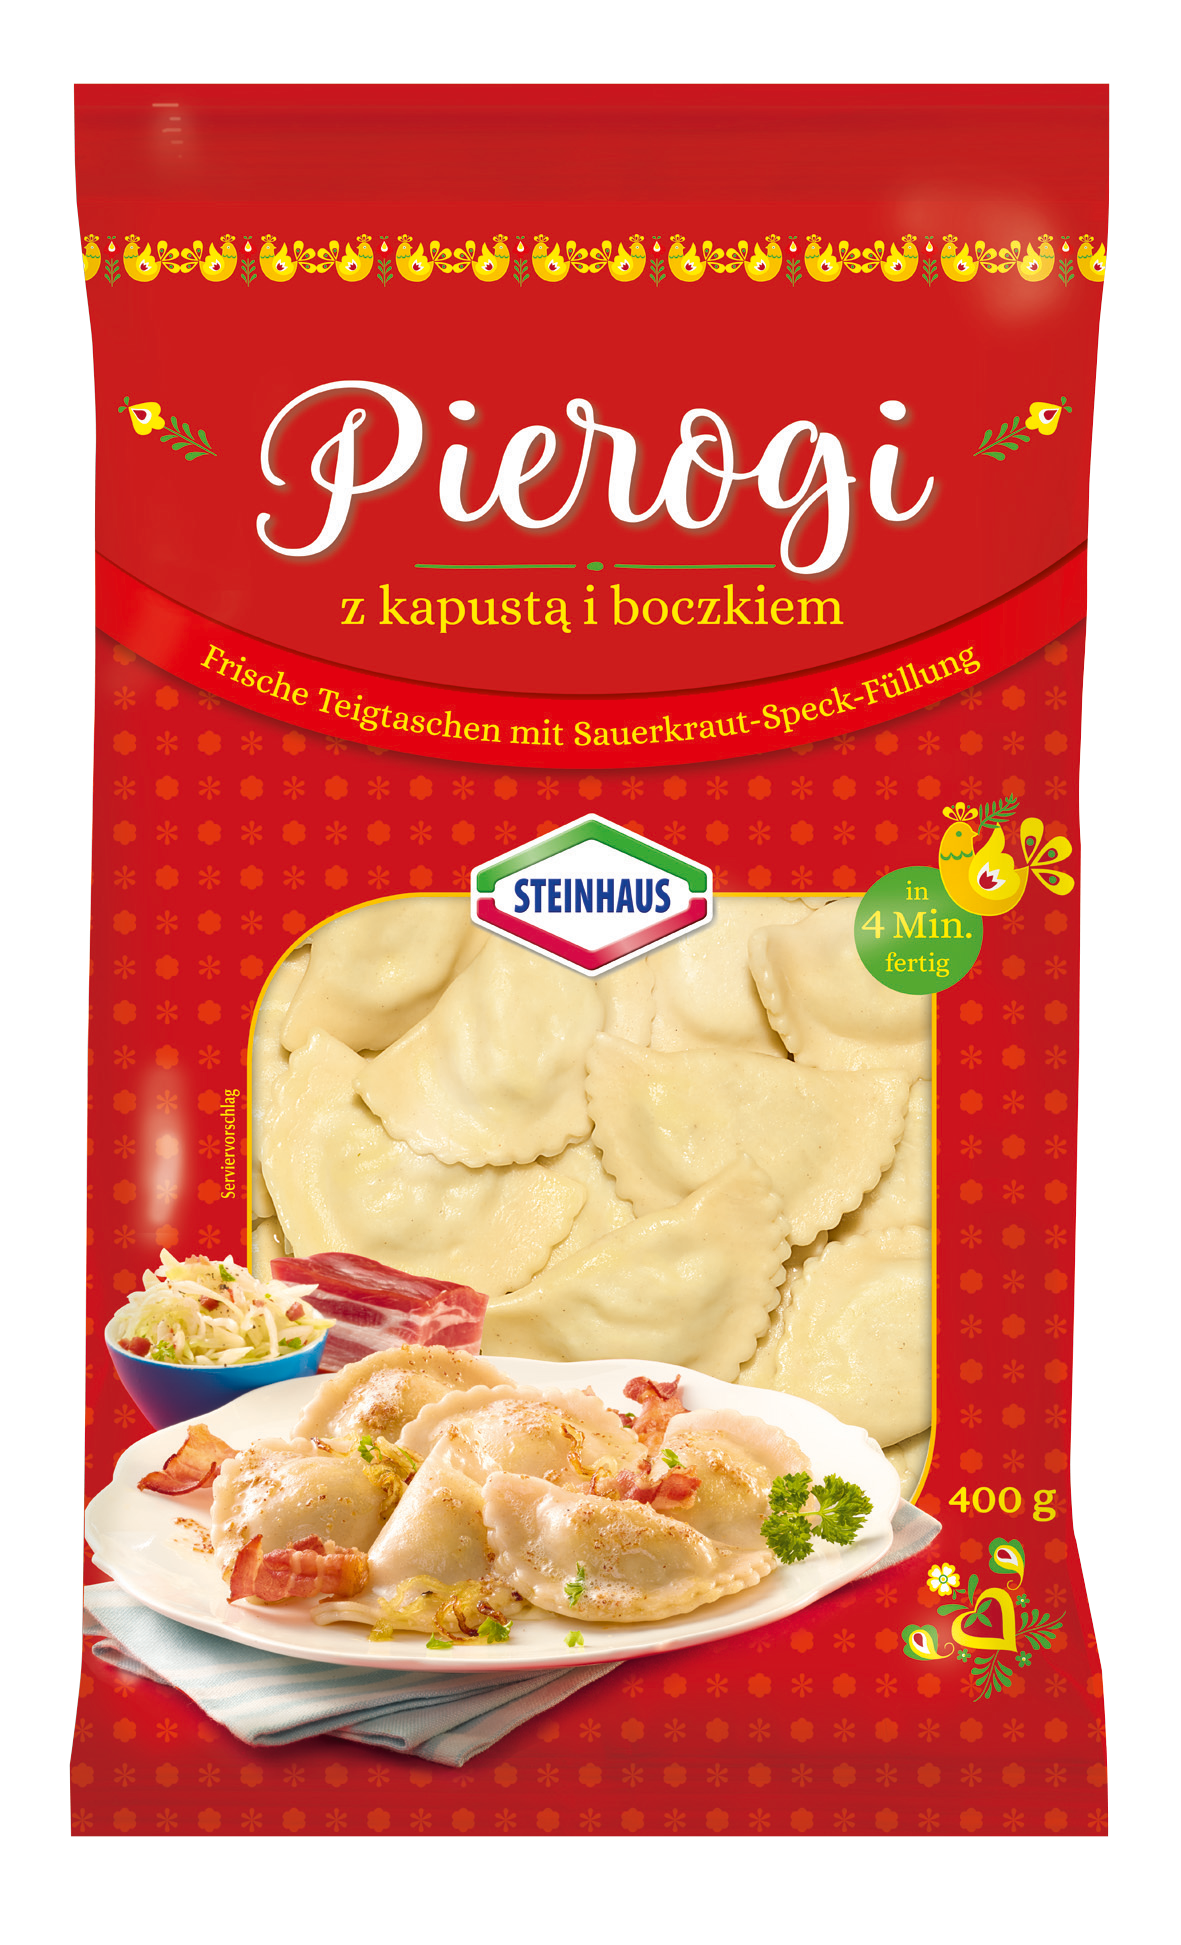 Pierogi Sauerkraut Speck 400g – Deftig rustikal gefüllte Teigtaschen mit Sauerkraut und geräuchertem Speck – eben ein wahrer Klassiker der osteuropäischen Küche.